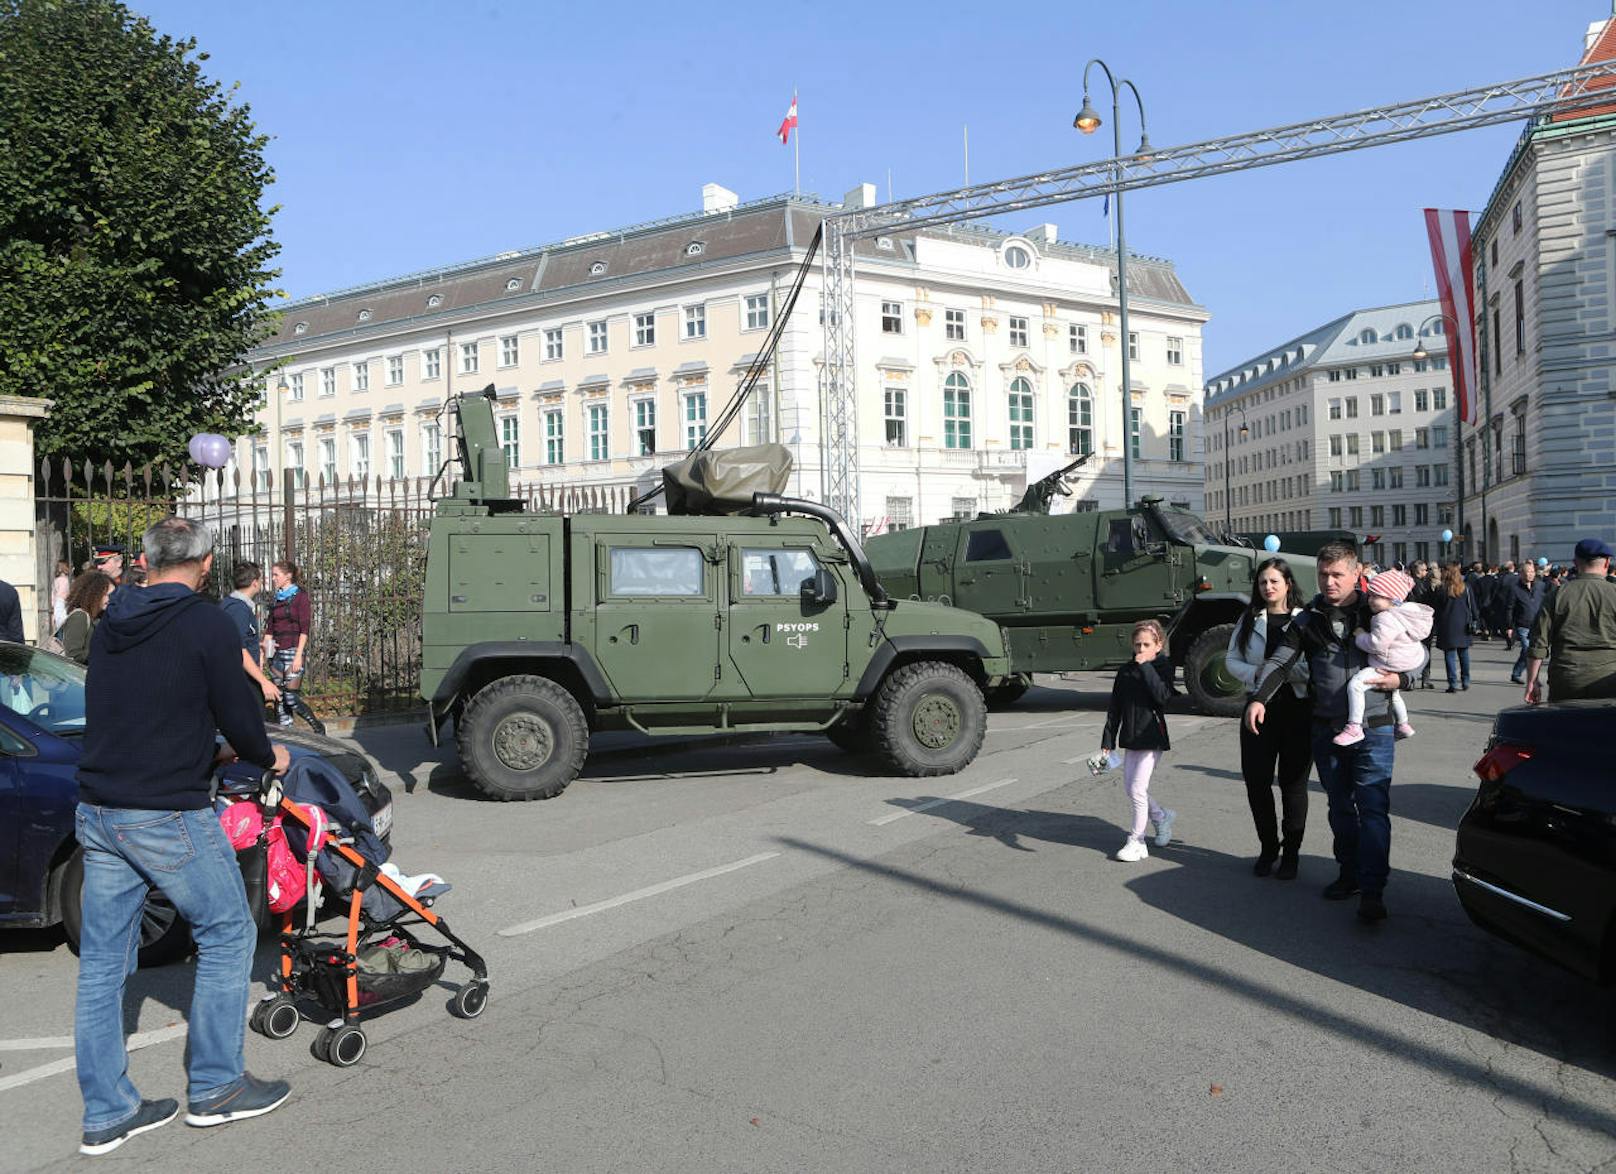 Impressionen der Leistungsschau des Bundesheeres am Nationalfeiertag. Insgesamt strömten über 700.000 Menschen zum Heldenplatz in Wien.